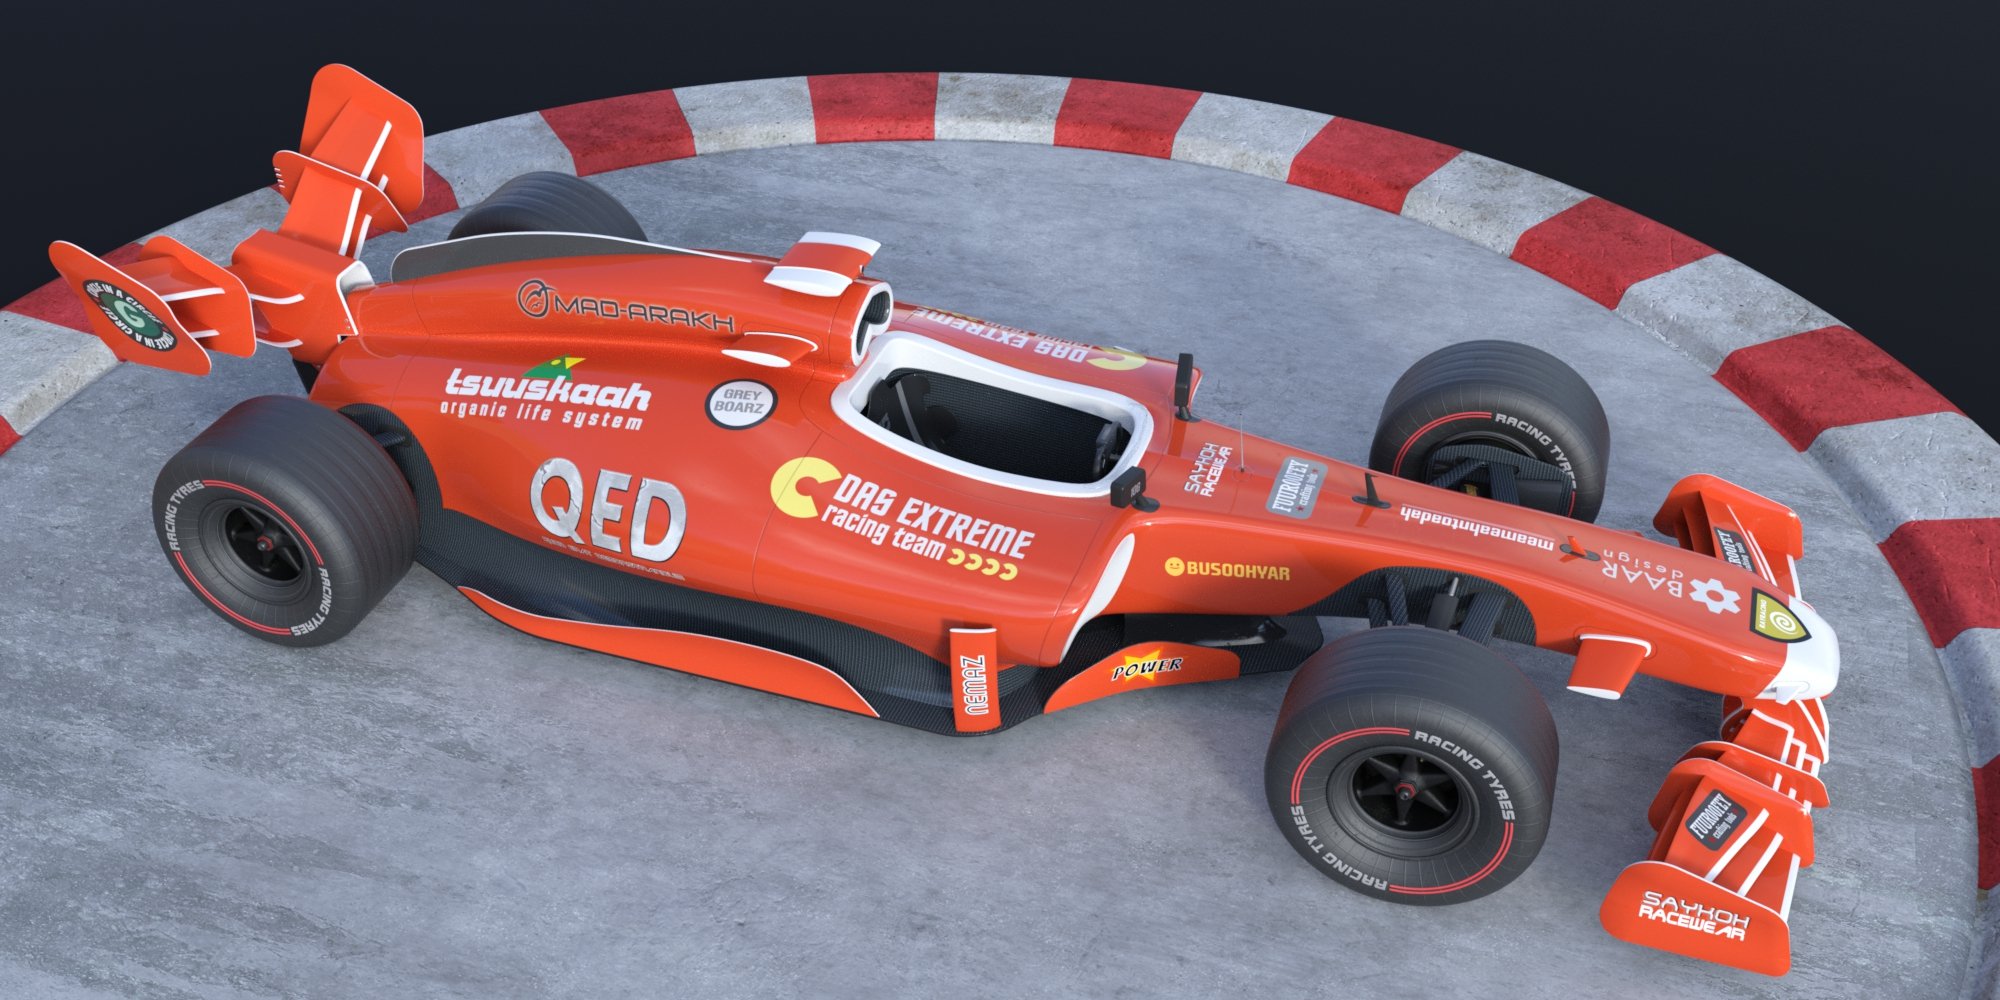 Fermion Race Car by: FToRi, 3D Models by Daz 3D